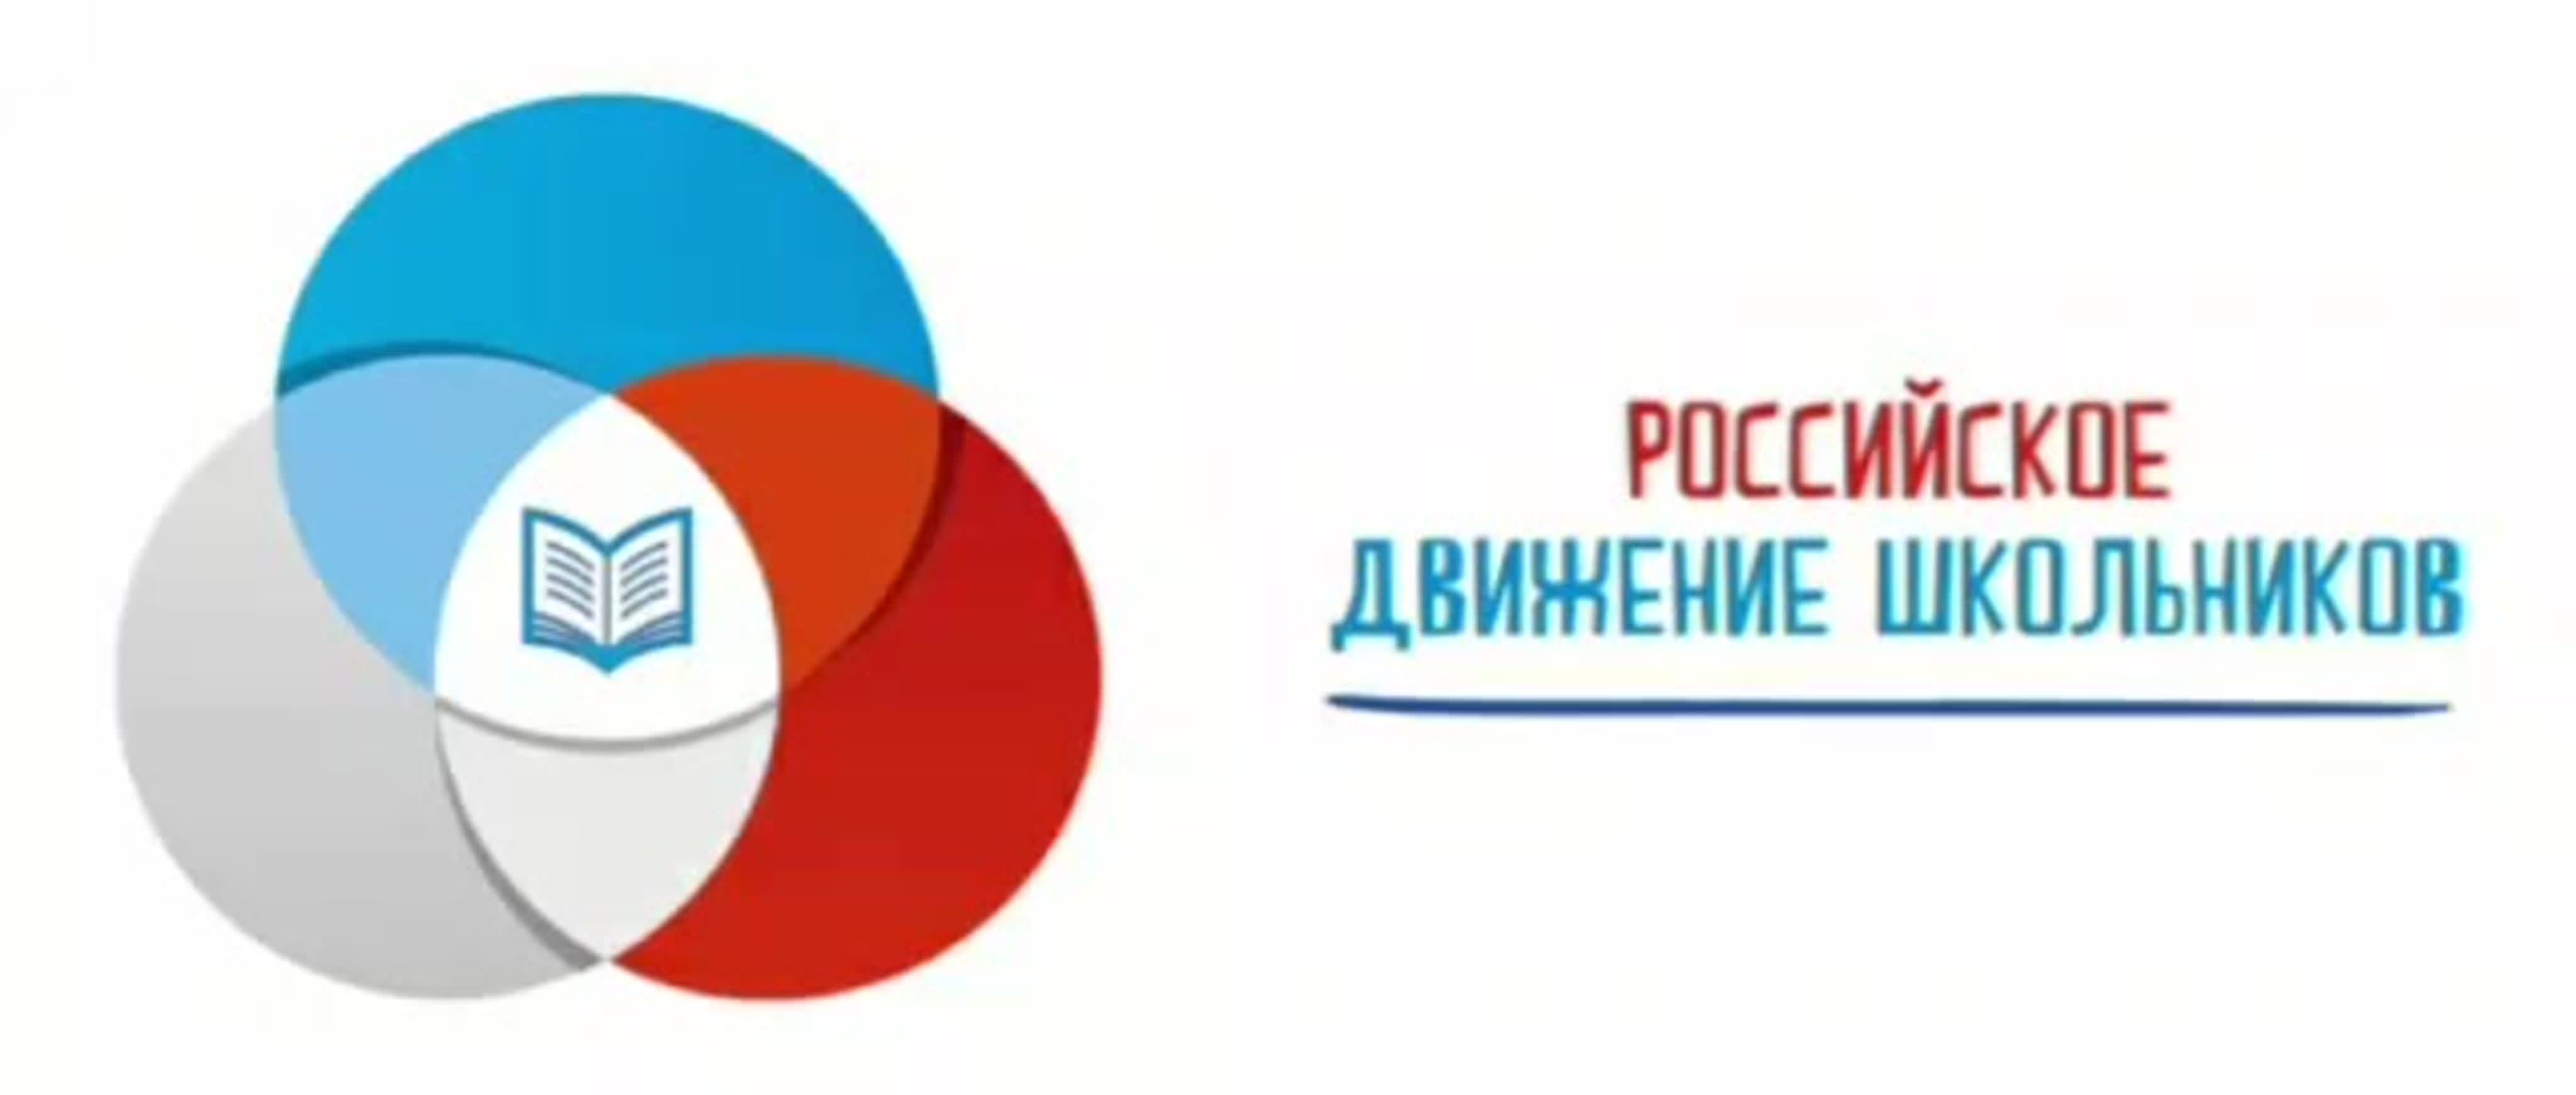 Дайджест мероприятий Российского движения школьников 21 - 27 ноября 2022г.